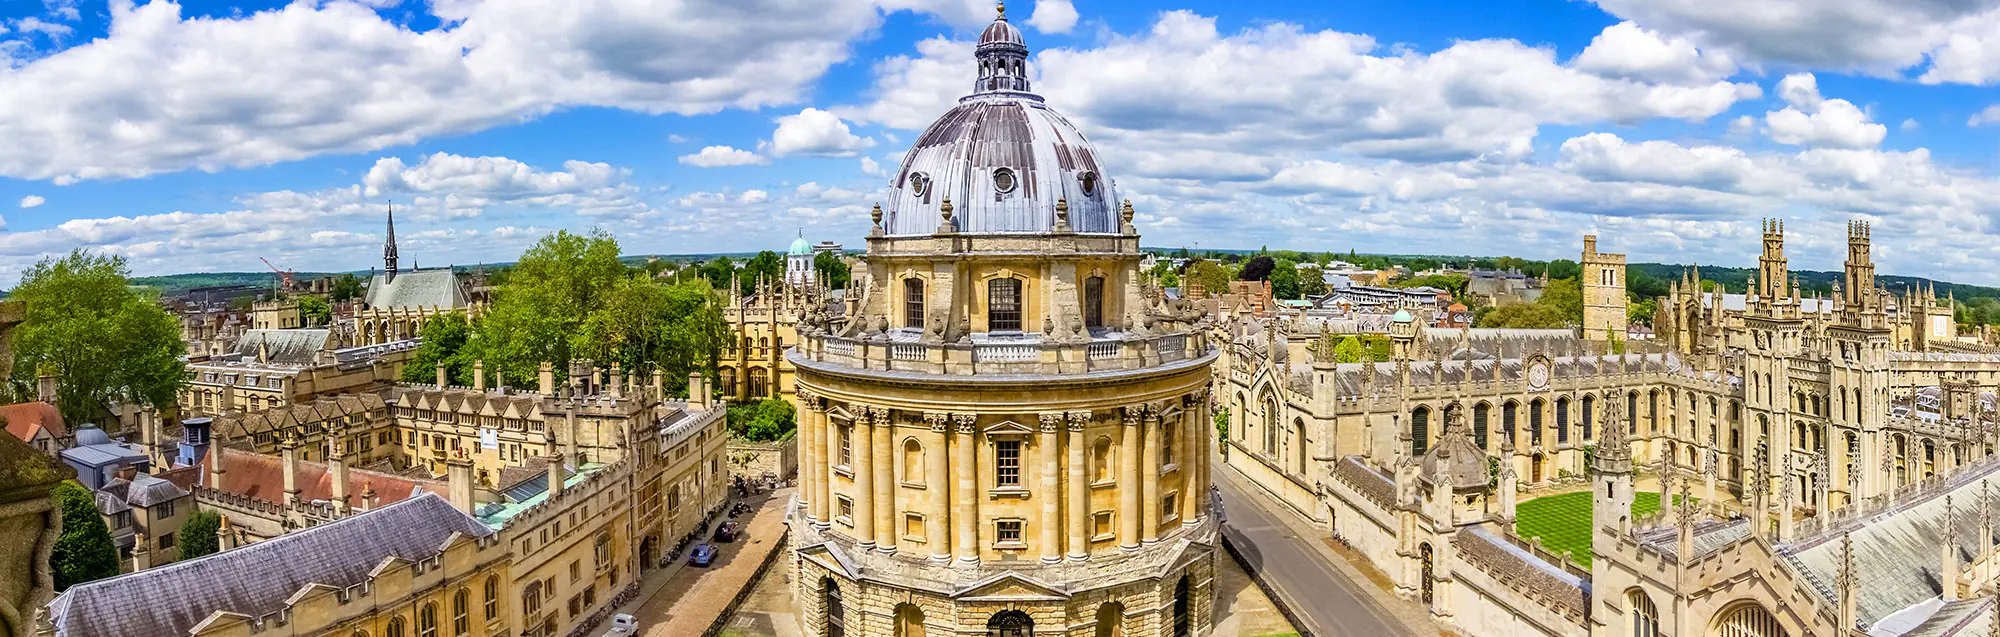 Escuelas de inglés para adultos, niños y adolescentes en Oxford